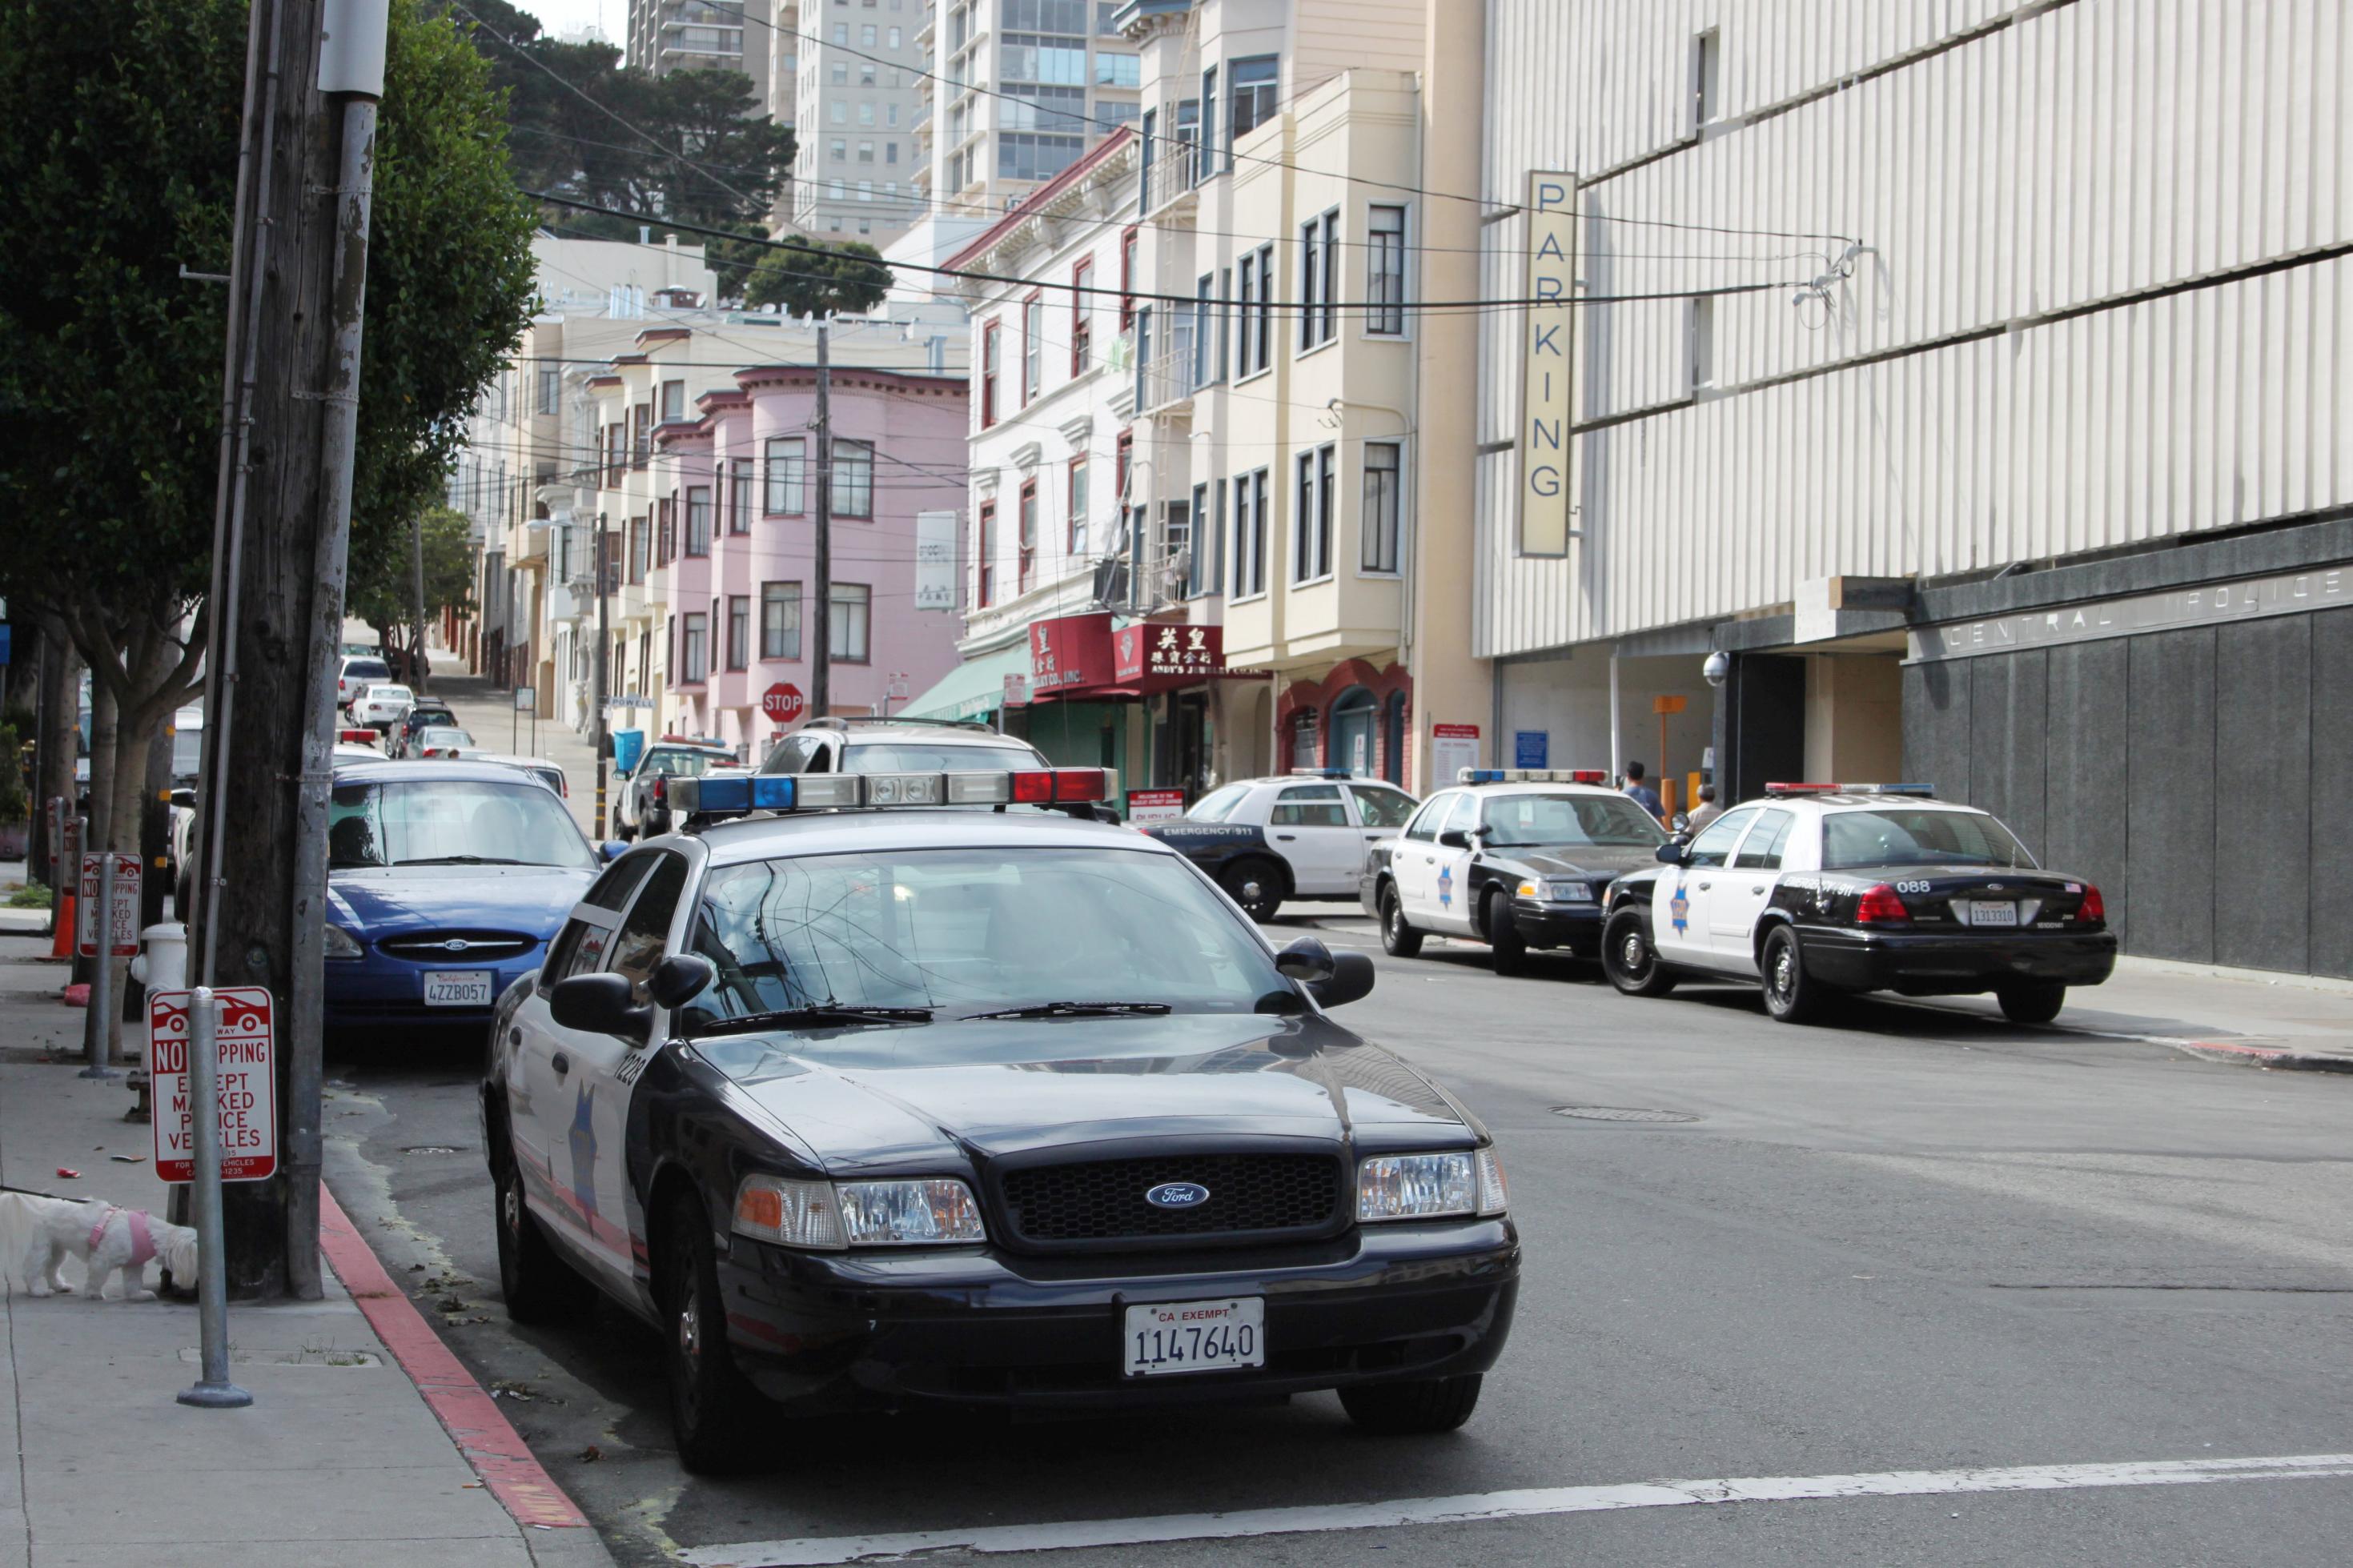 Ein Polizeiauto parkt am Straßenrand. Auf der anderen Straßenseite sind drei weitere Polizeiautos zu sehen.